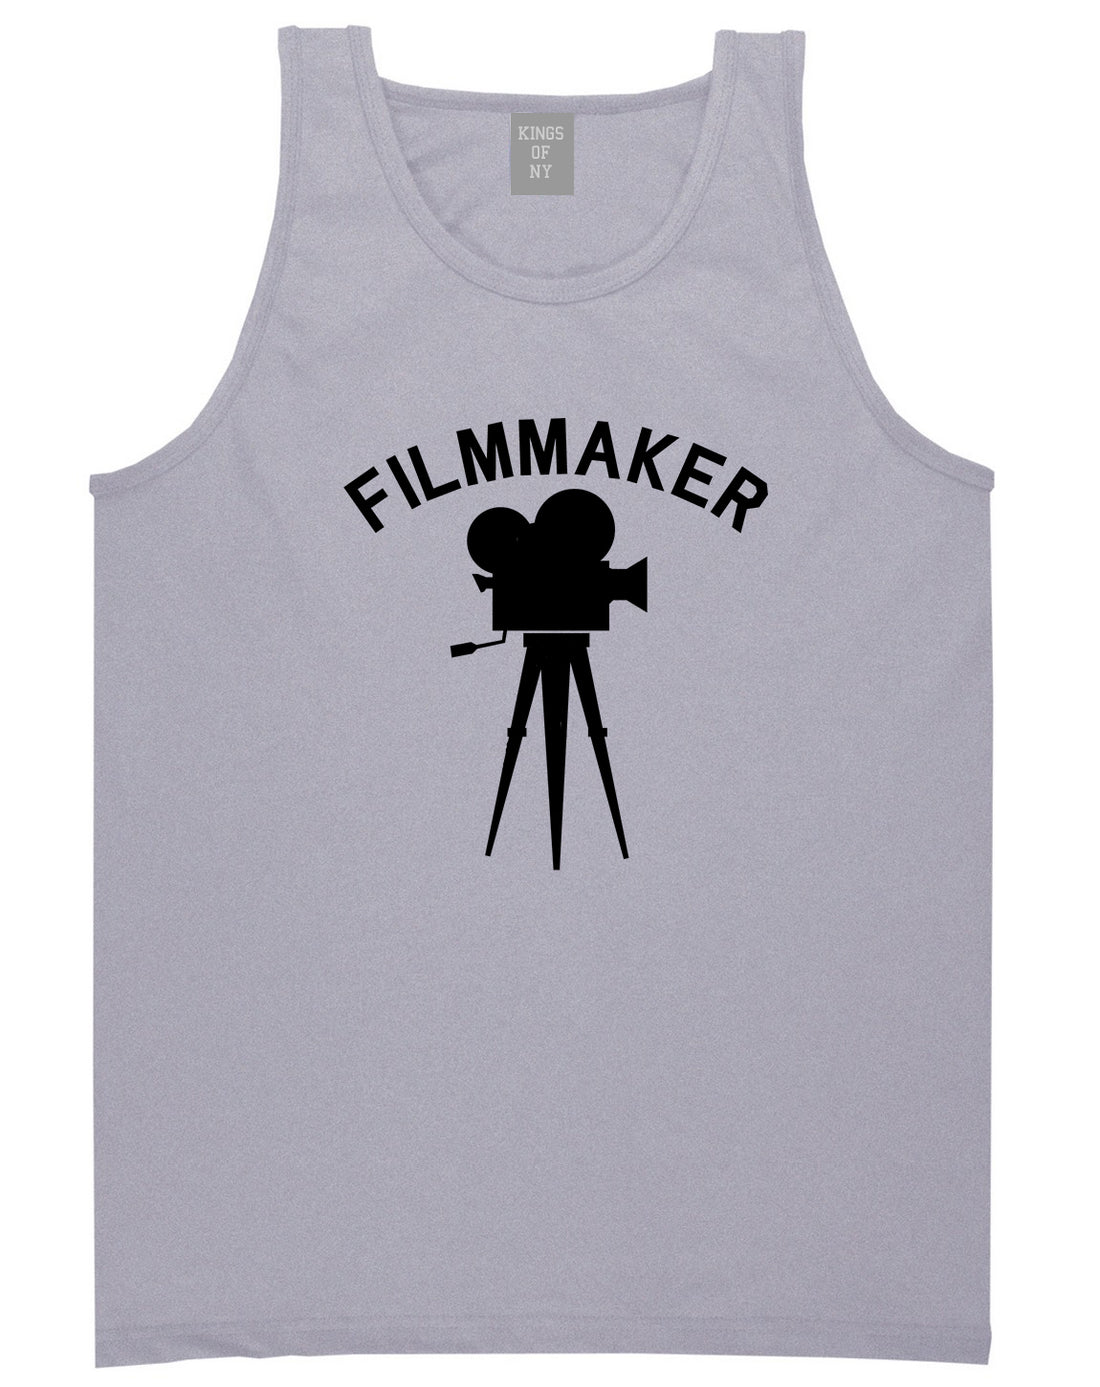 Filmmaker Camera Mens Grey Tank Top Shirt by KINGS OF NY